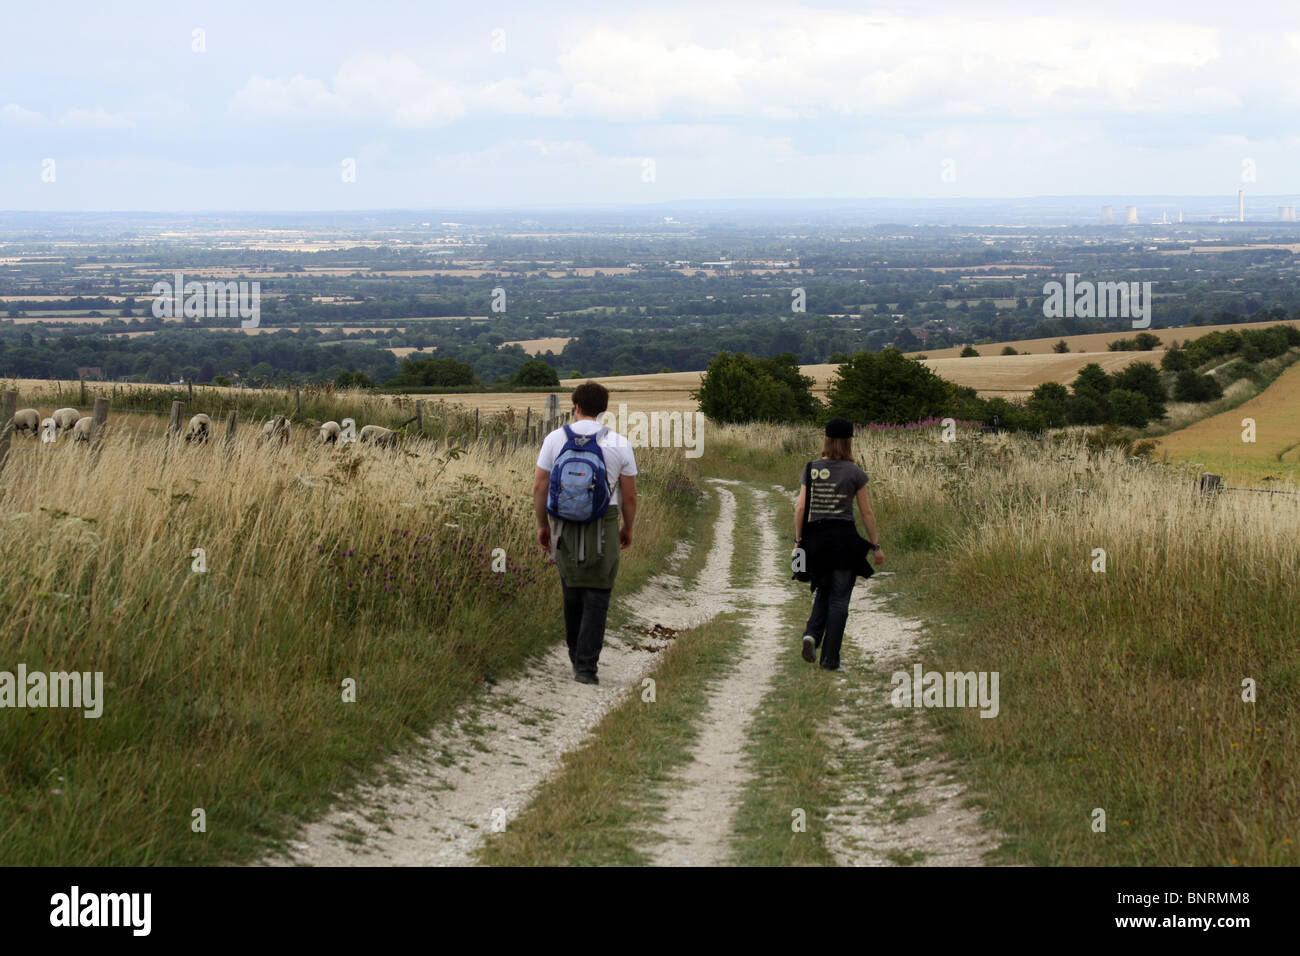 Deux personnes marchant le long de la route circulaire White Horse Hill dans l'Oxfordshire, Angleterre Banque D'Images